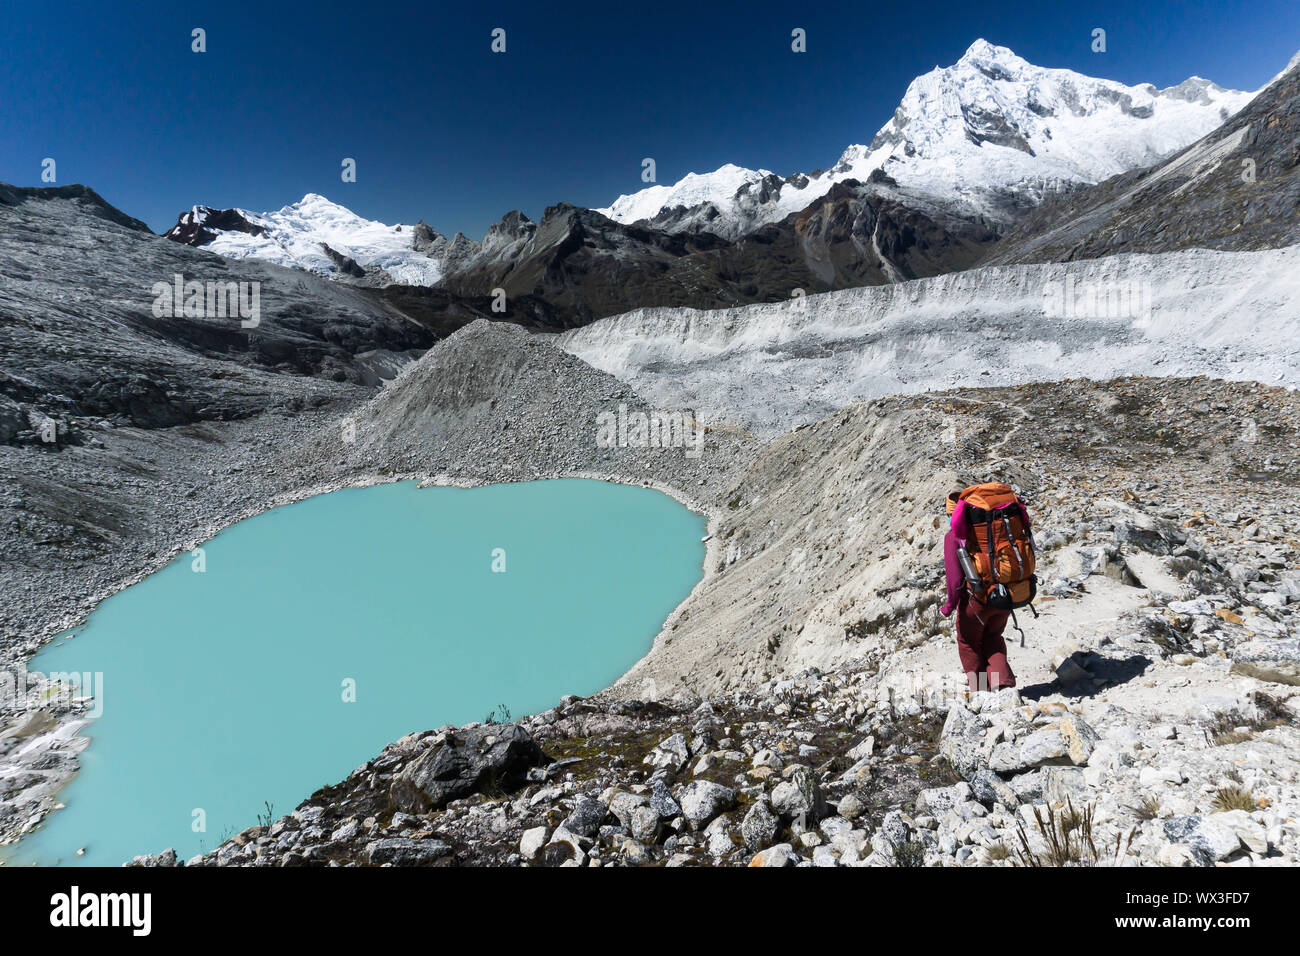 Alpiniste féminine passe par un lac turquoise dans les Andes au Pérou Banque D'Images